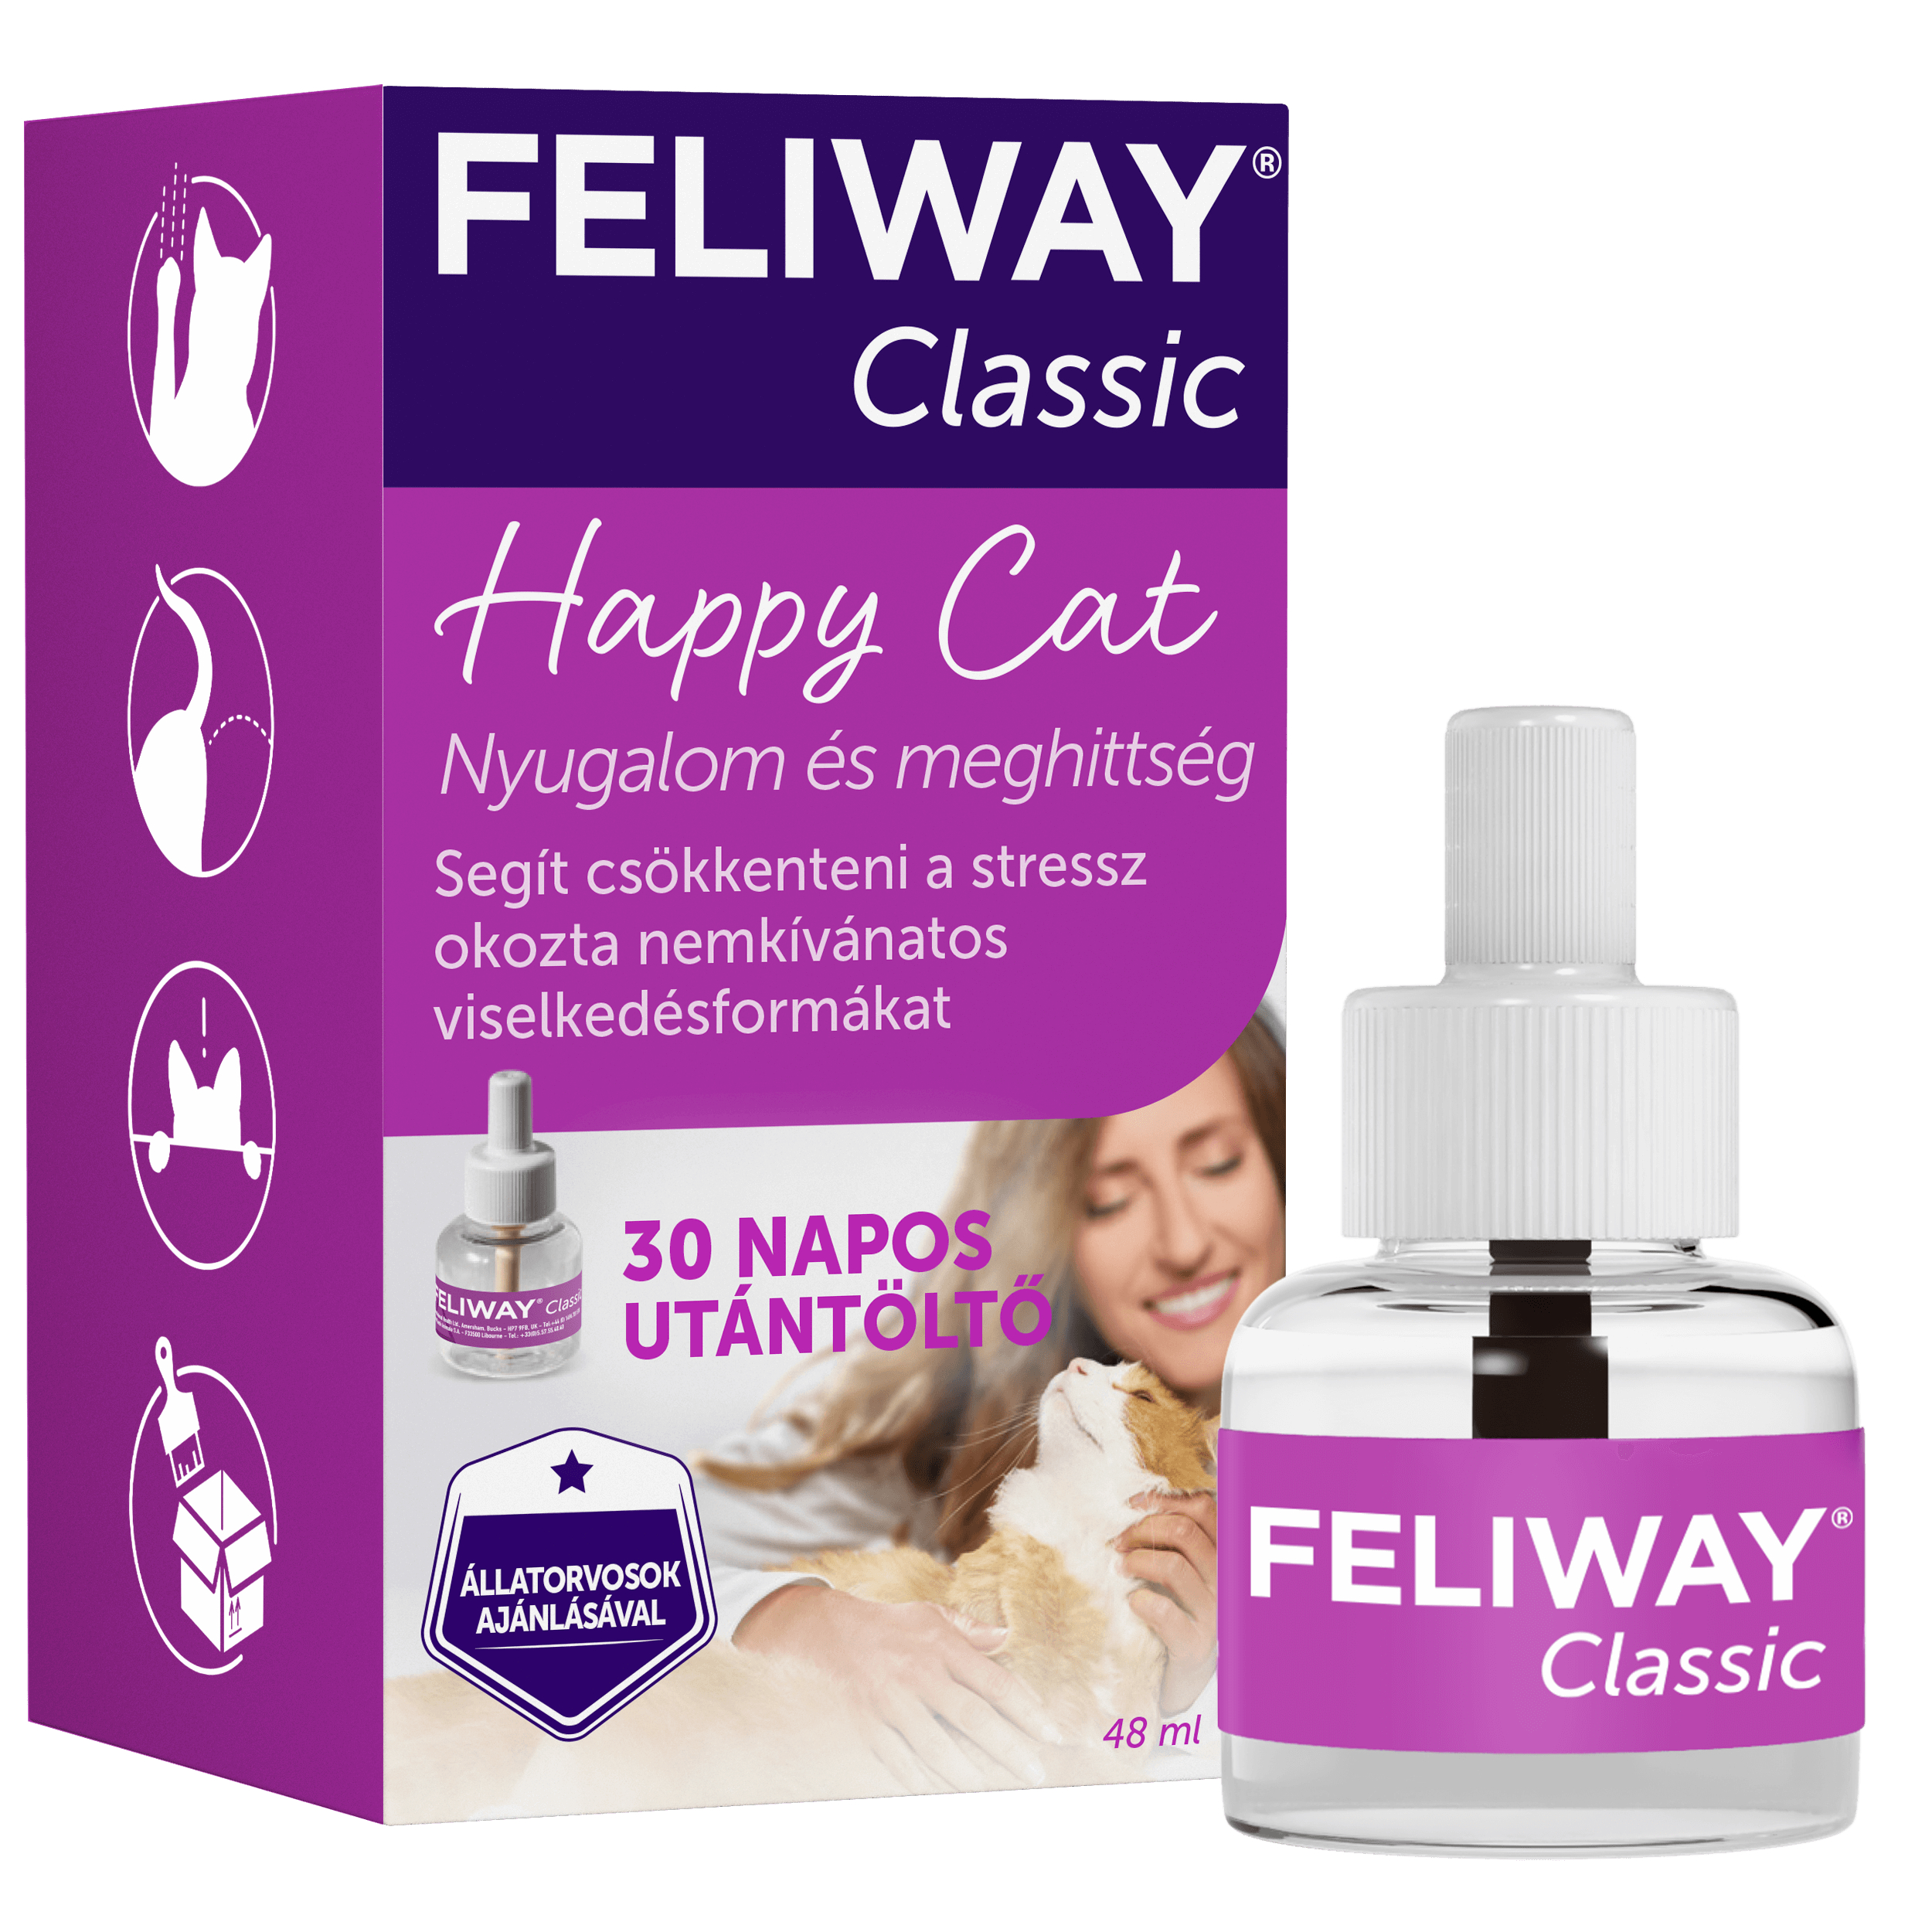 Feliway Classic Nachfüllung für Katzen, 48 ml